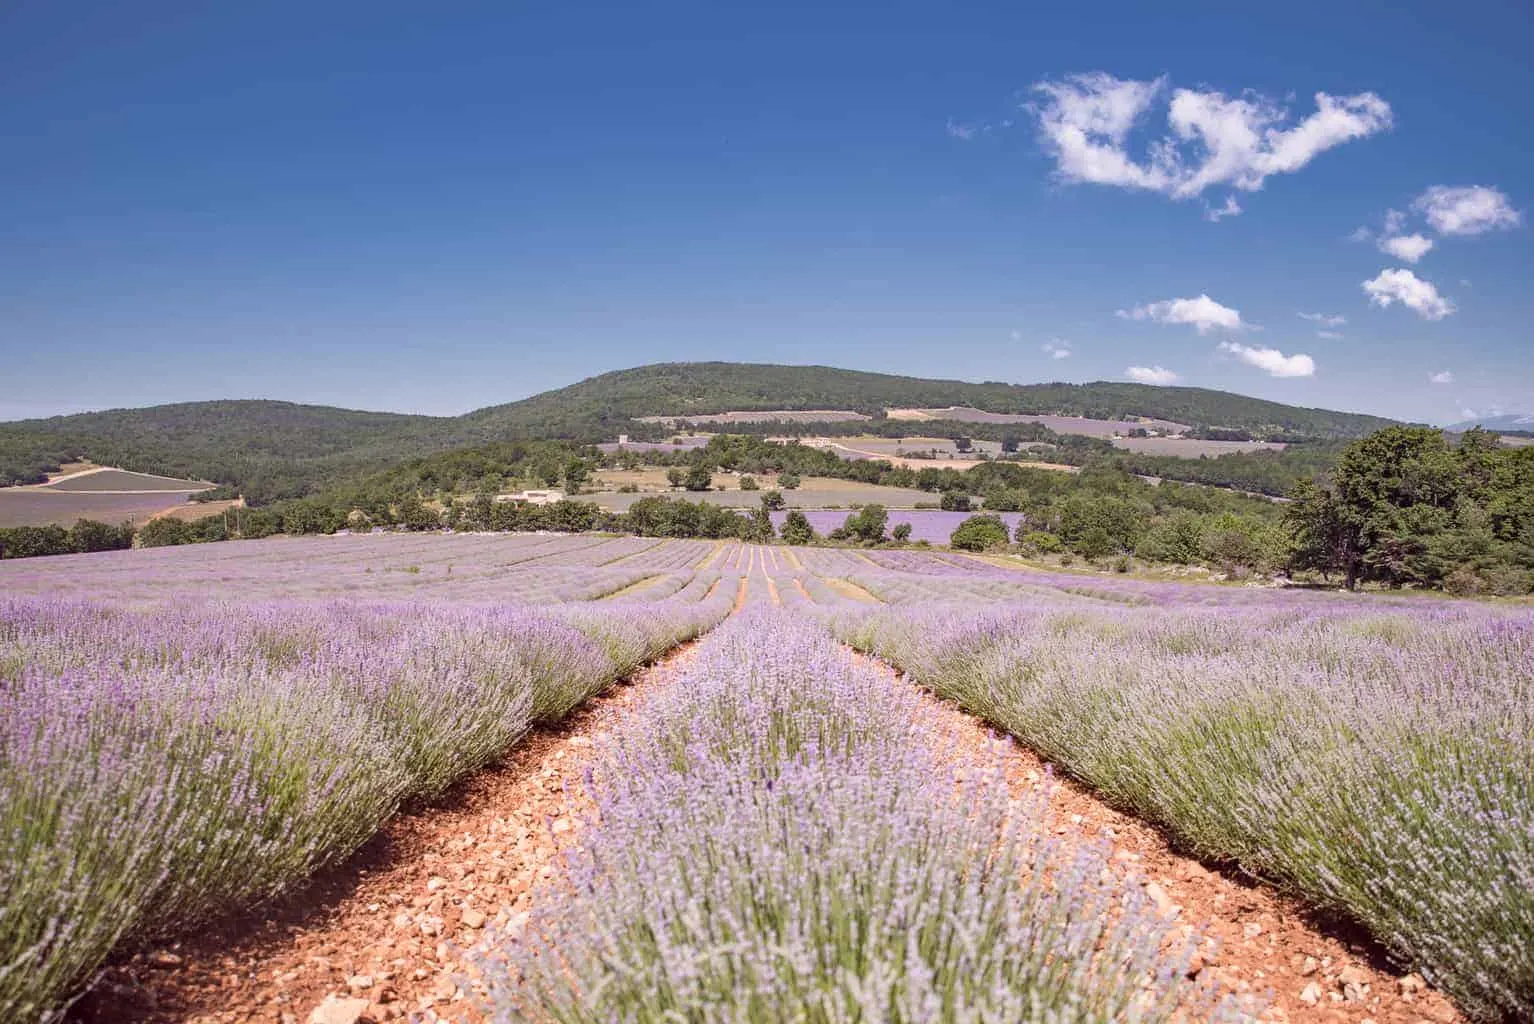 Lavender fields of Chateau du Bois.